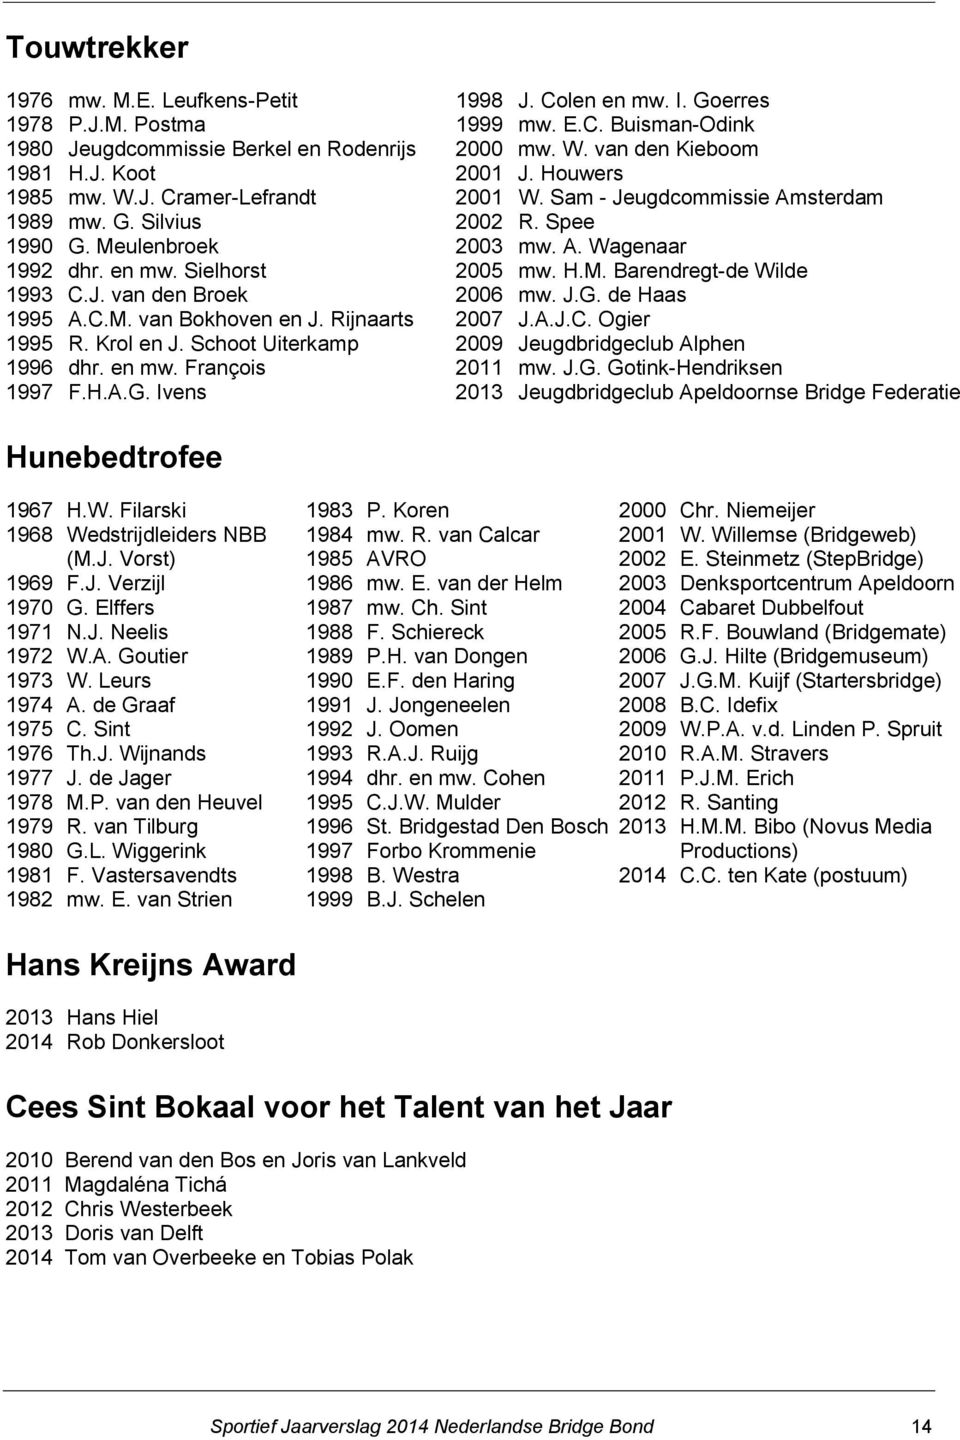 E.C. Buisman-Odink 2000 mw. W. van den Kieboom 2001 J. Houwers 2001 W. Sam - Jeugdcommissie Amsterdam 2002 R. Spee 2003 mw. A. Wagenaar 2005 mw. H.M. Barendregt-de Wilde 2006 mw. J.G. de Haas 2007 J.